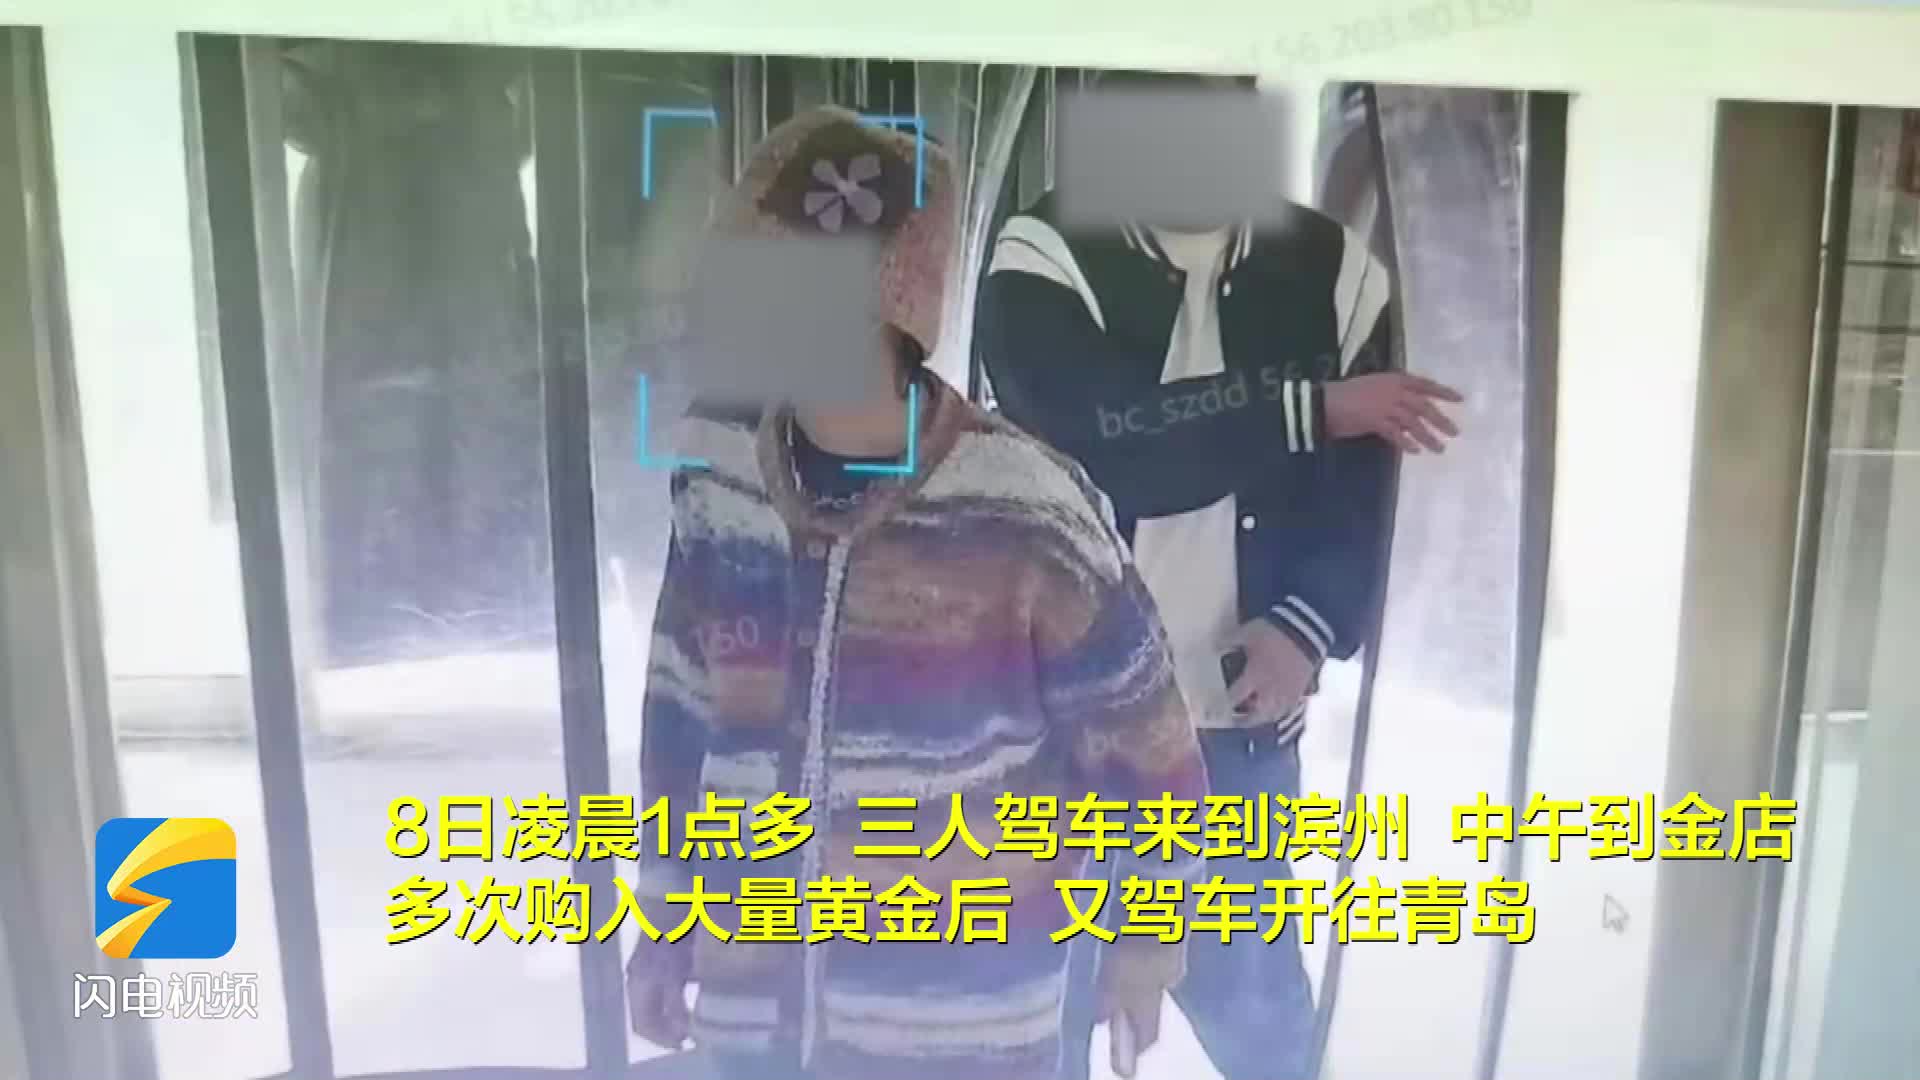 1小时花60万买2斤黄金 滨州滨城警方打掉一“买金”为电诈洗钱的团伙